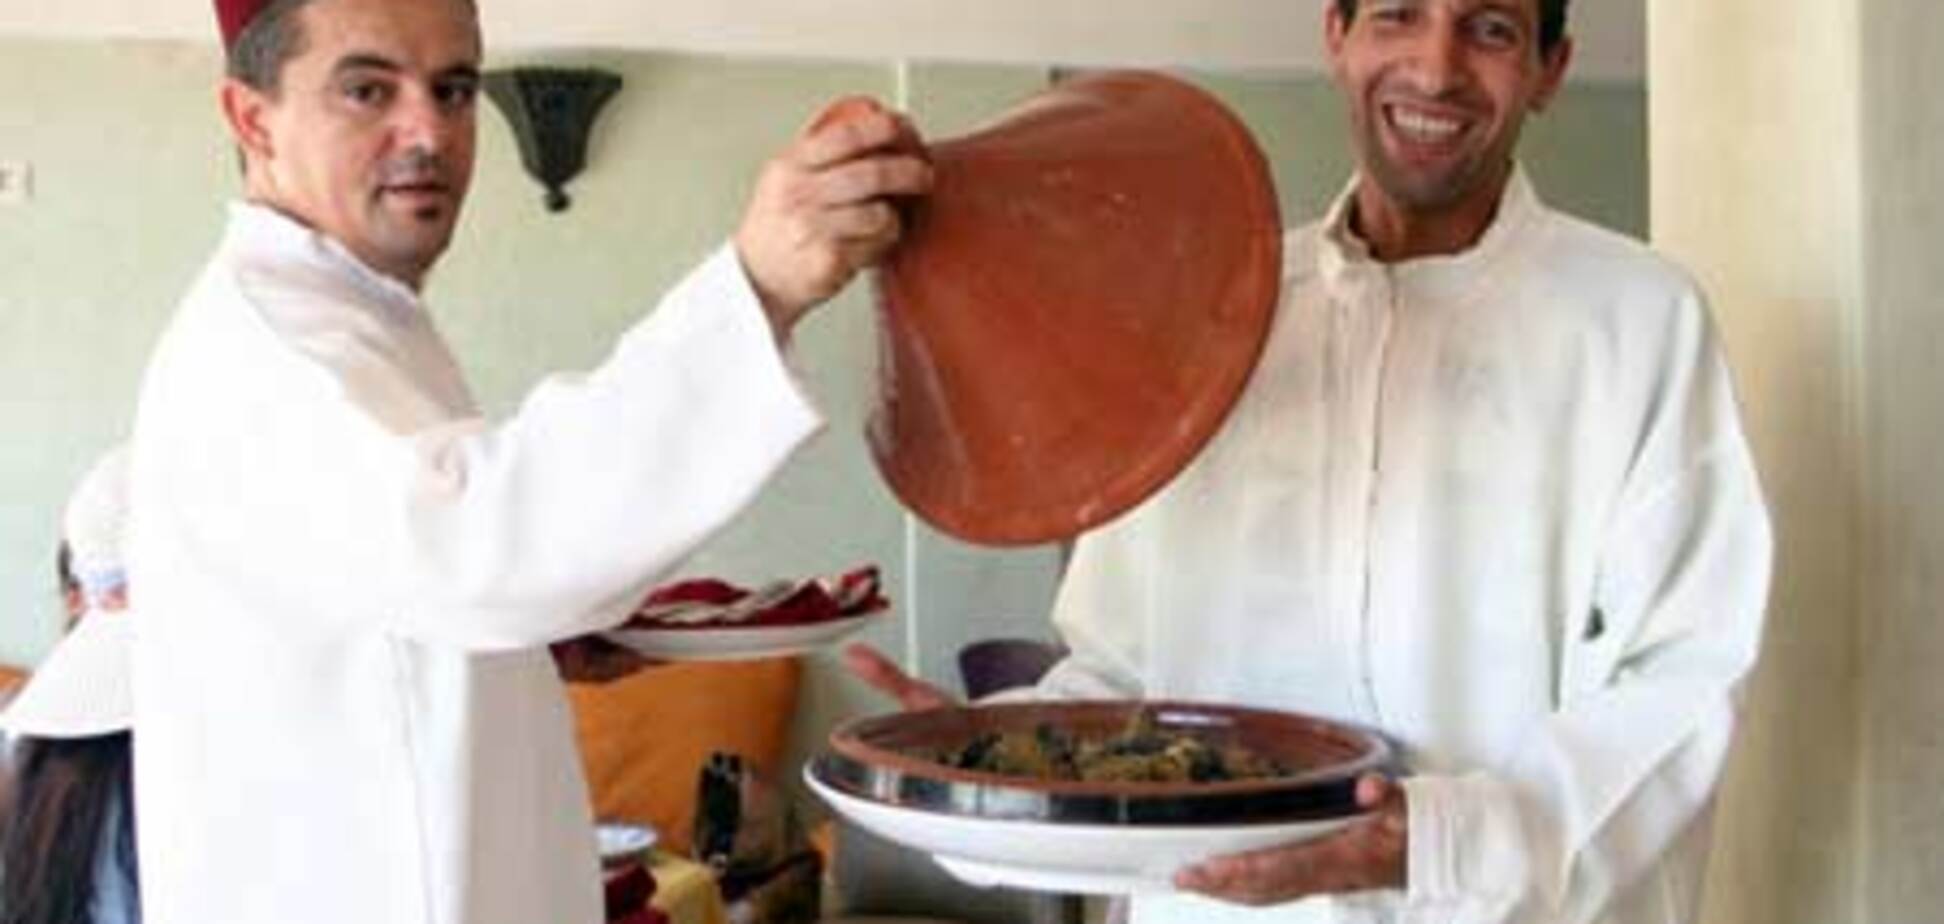 Уникальный рекорд установили кулинары из Касабланки